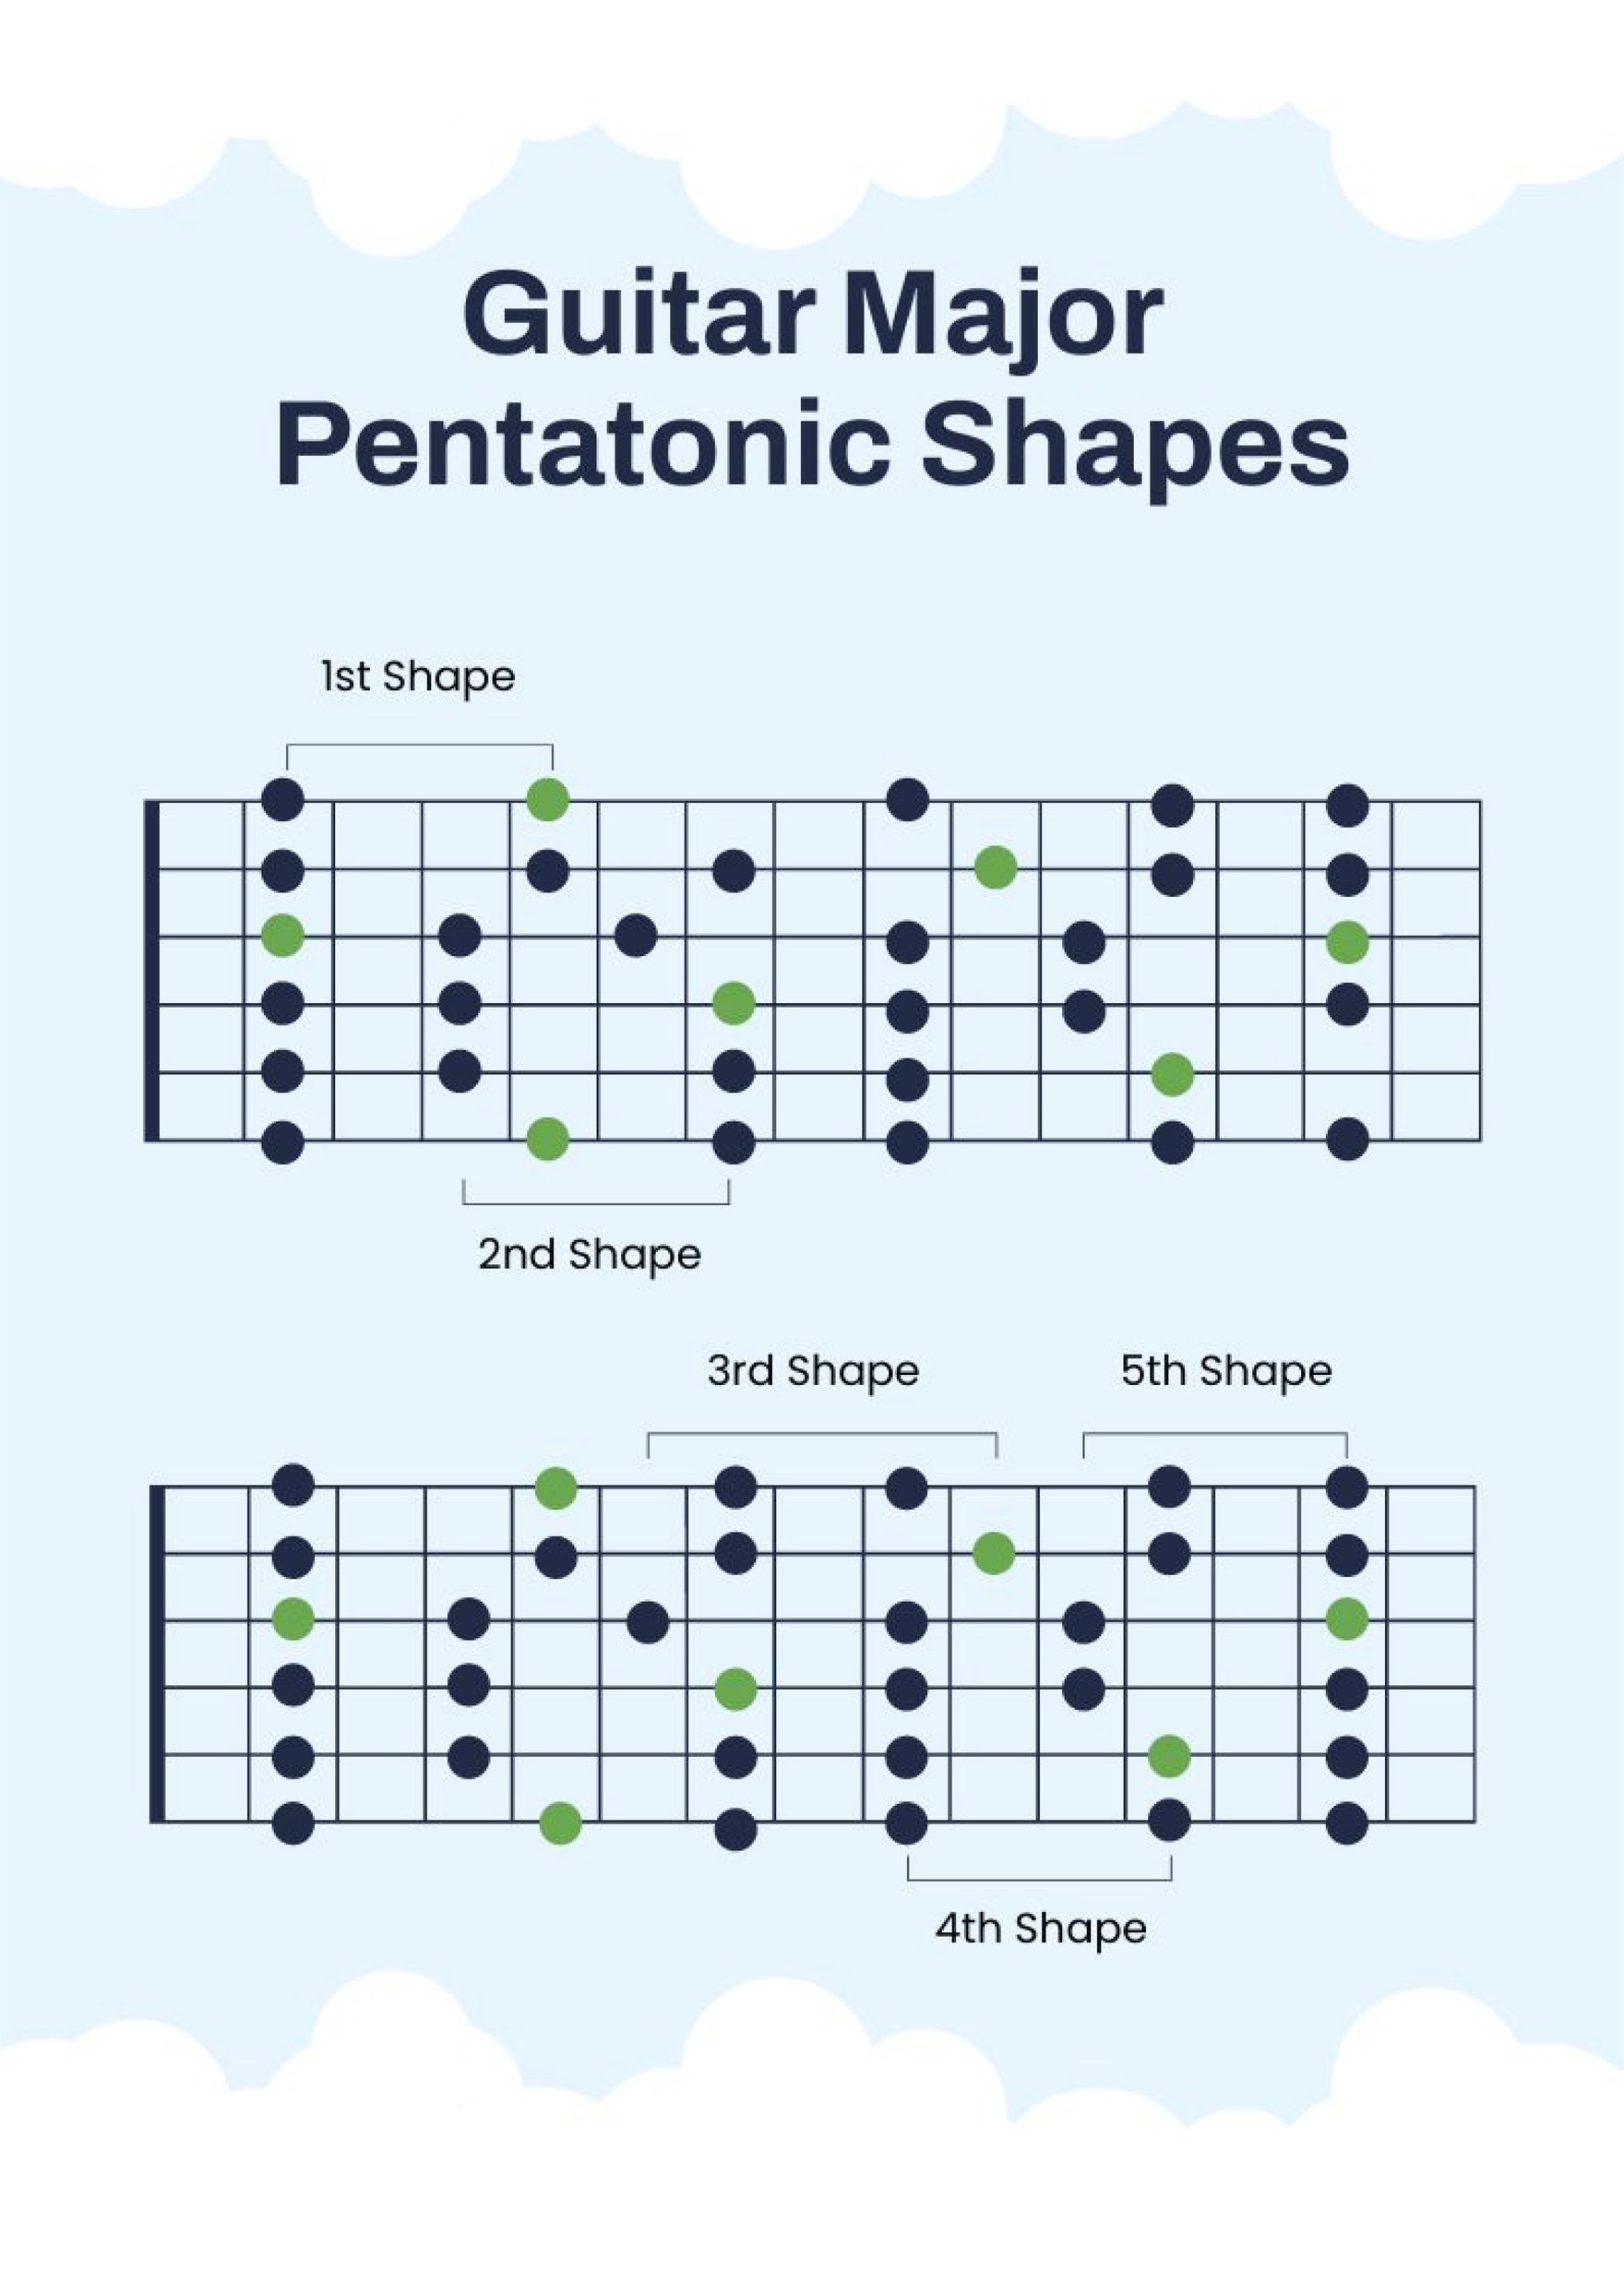 A Pentatonic Major guitar scale